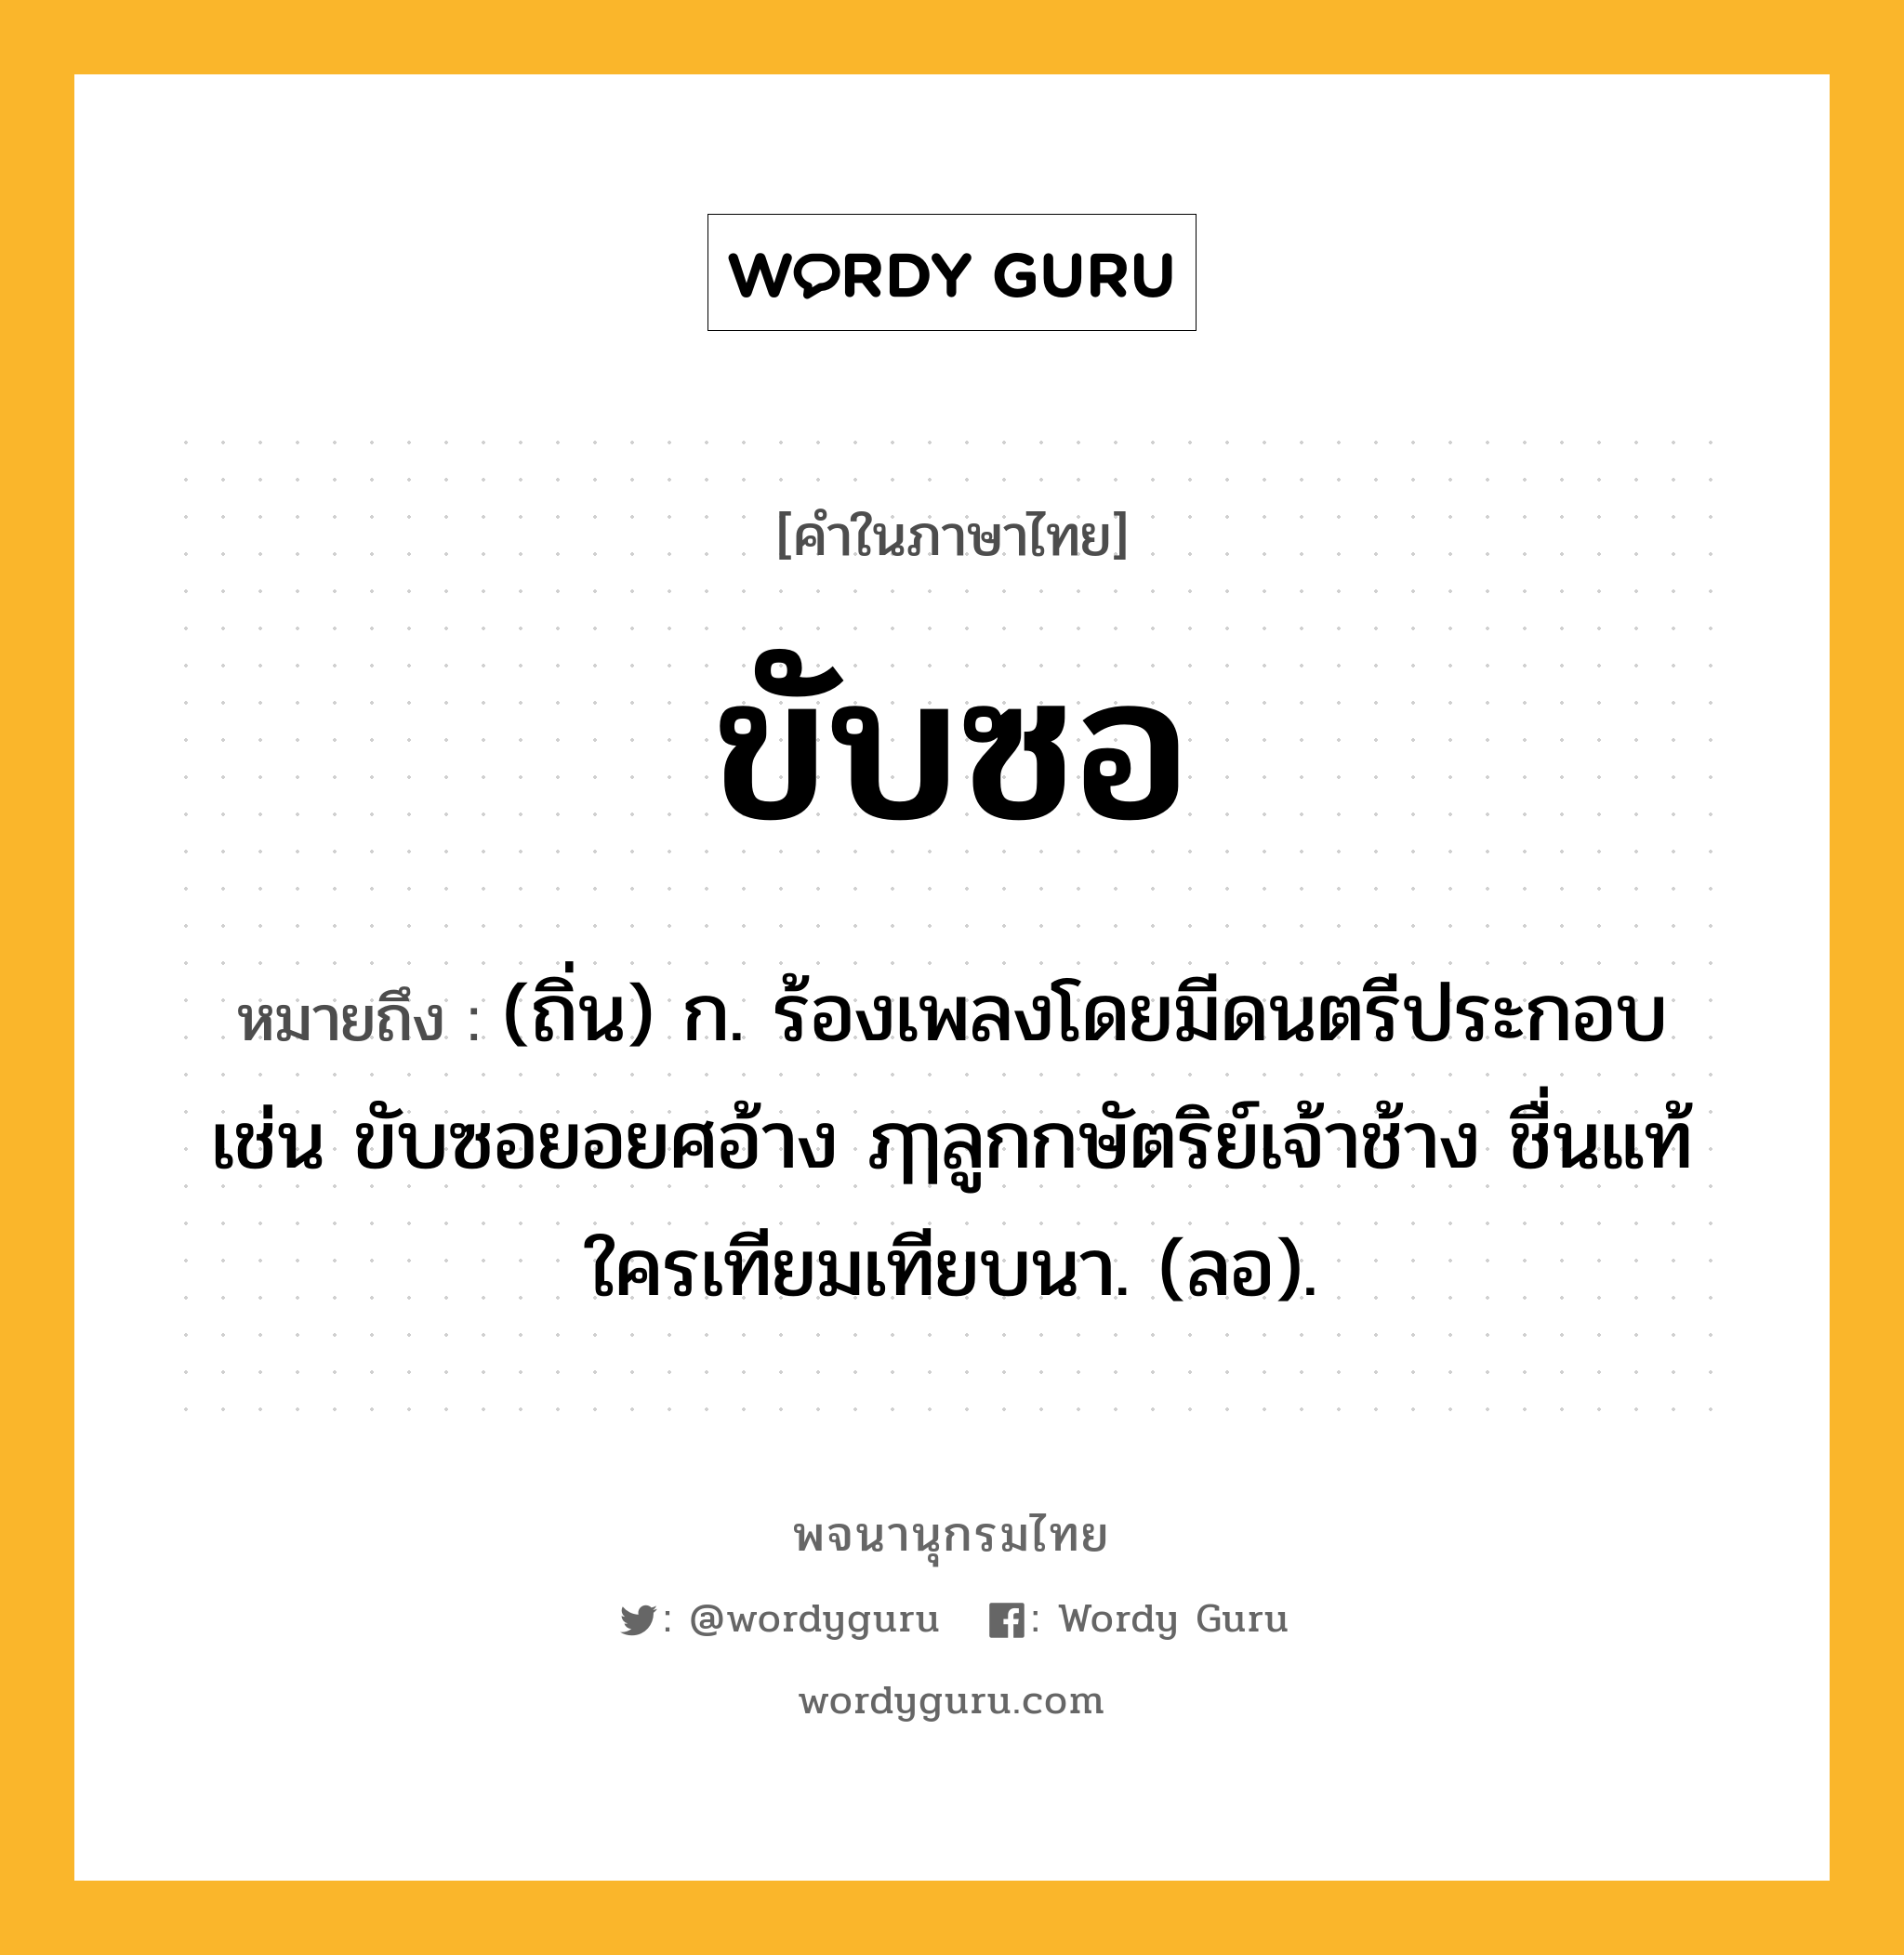 ขับซอ หมายถึงอะไร?, คำในภาษาไทย ขับซอ หมายถึง (ถิ่น) ก. ร้องเพลงโดยมีดนตรีประกอบ เช่น ขับซอยอยศอ้าง ฦๅลูกกษัตริย์เจ้าช้าง ชื่นแท้ใครเทียมเทียบนา. (ลอ).